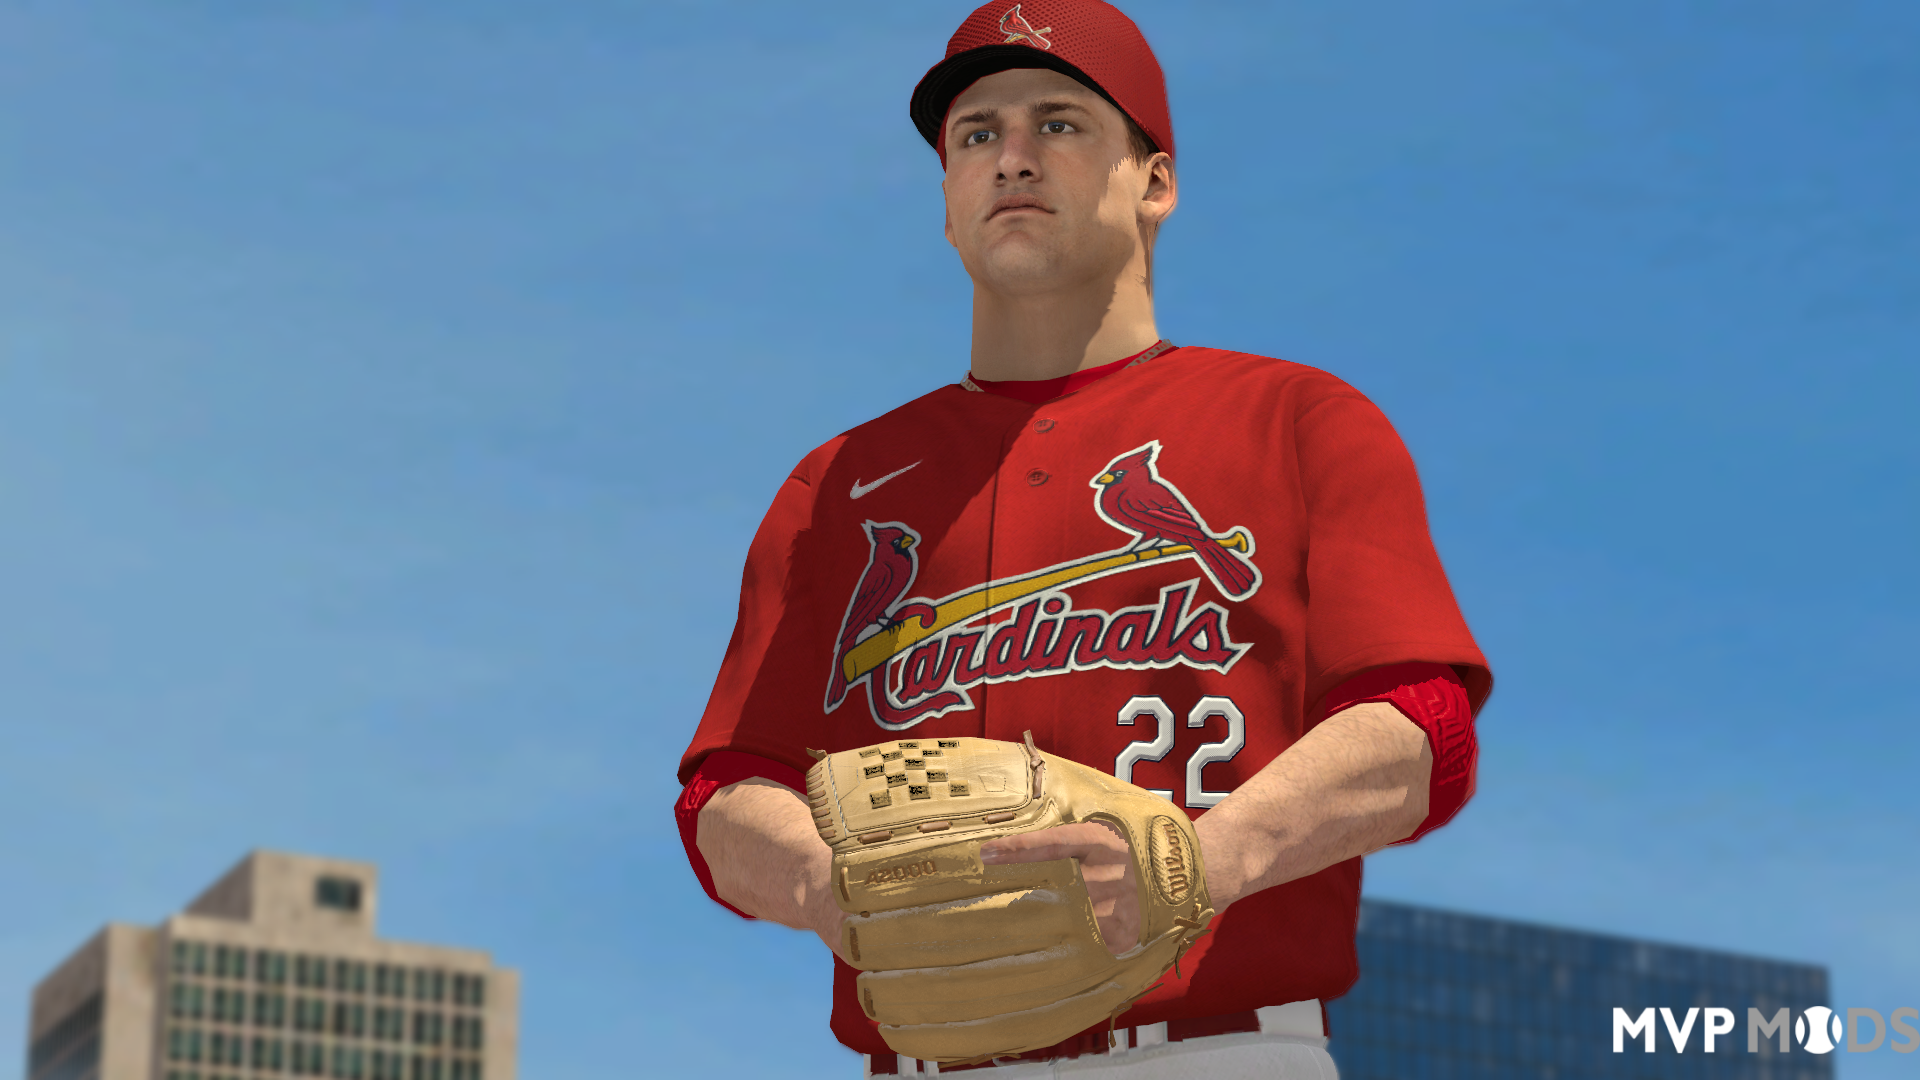 2021 Springfield Cardinals uniforms - Uniforms - MVP Mods